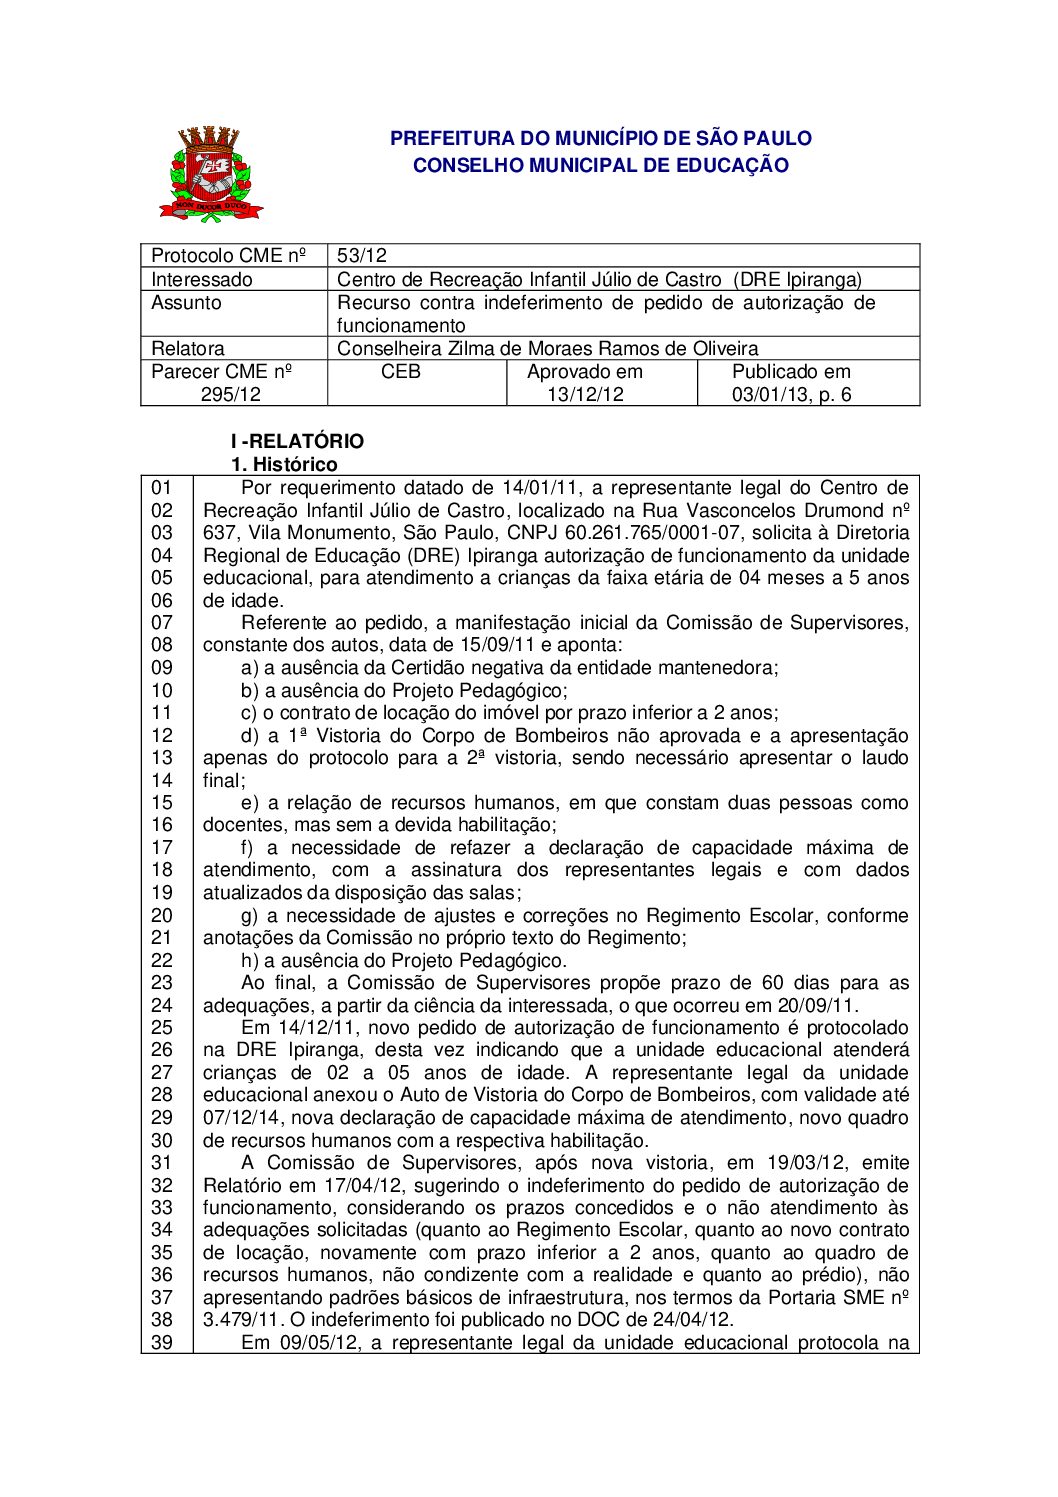 Parecer CME nº 295/2012 - Centro de Recreação Infantil Júlio de Castro  (DRE Ipiranga) - Recurso contra indeferimento de pedido de autorização de funcionamento 